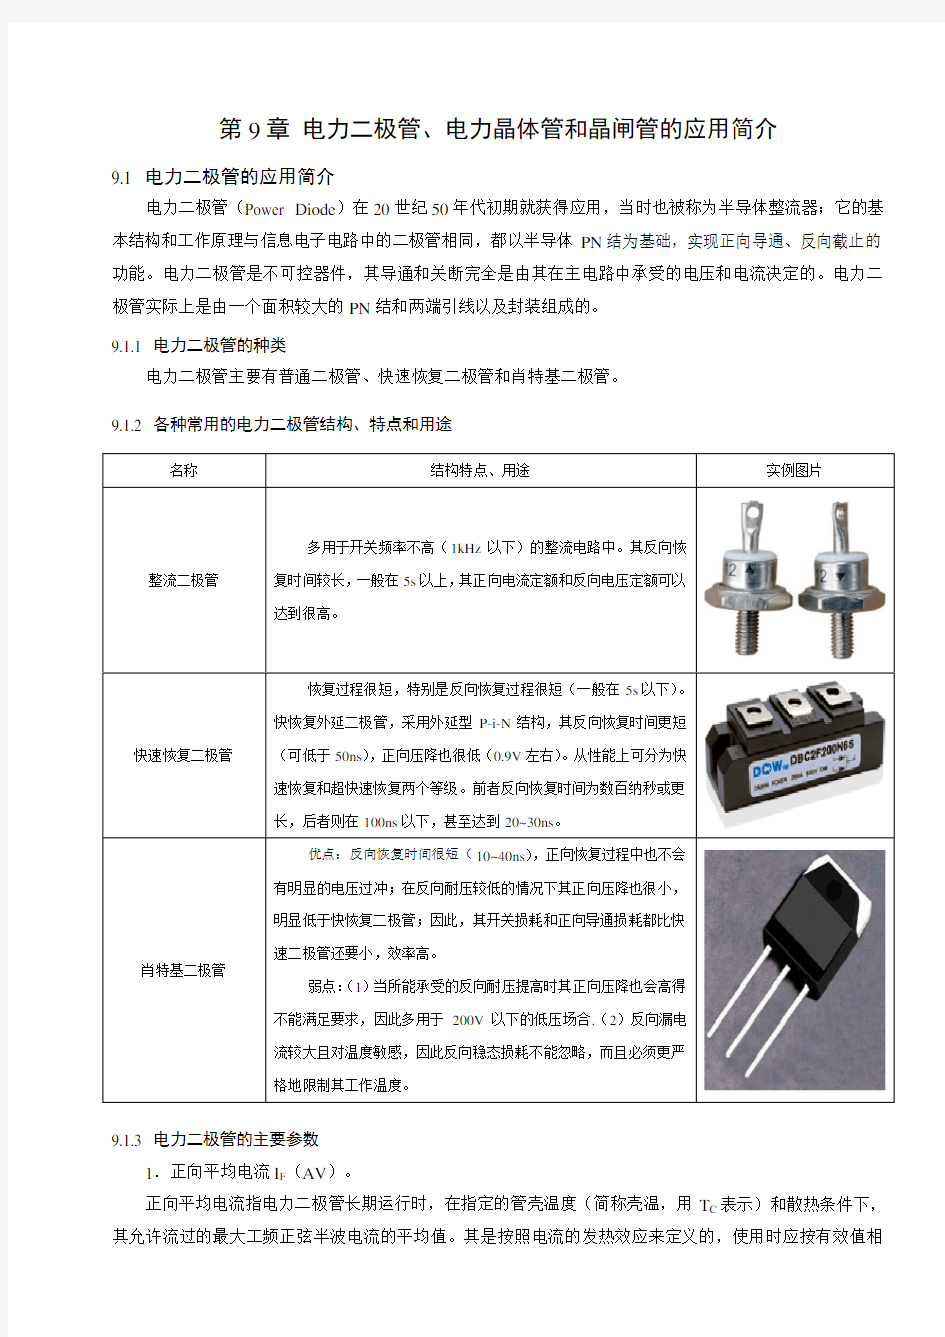 第章电力二极管、电力晶体管和晶闸管的应用简介